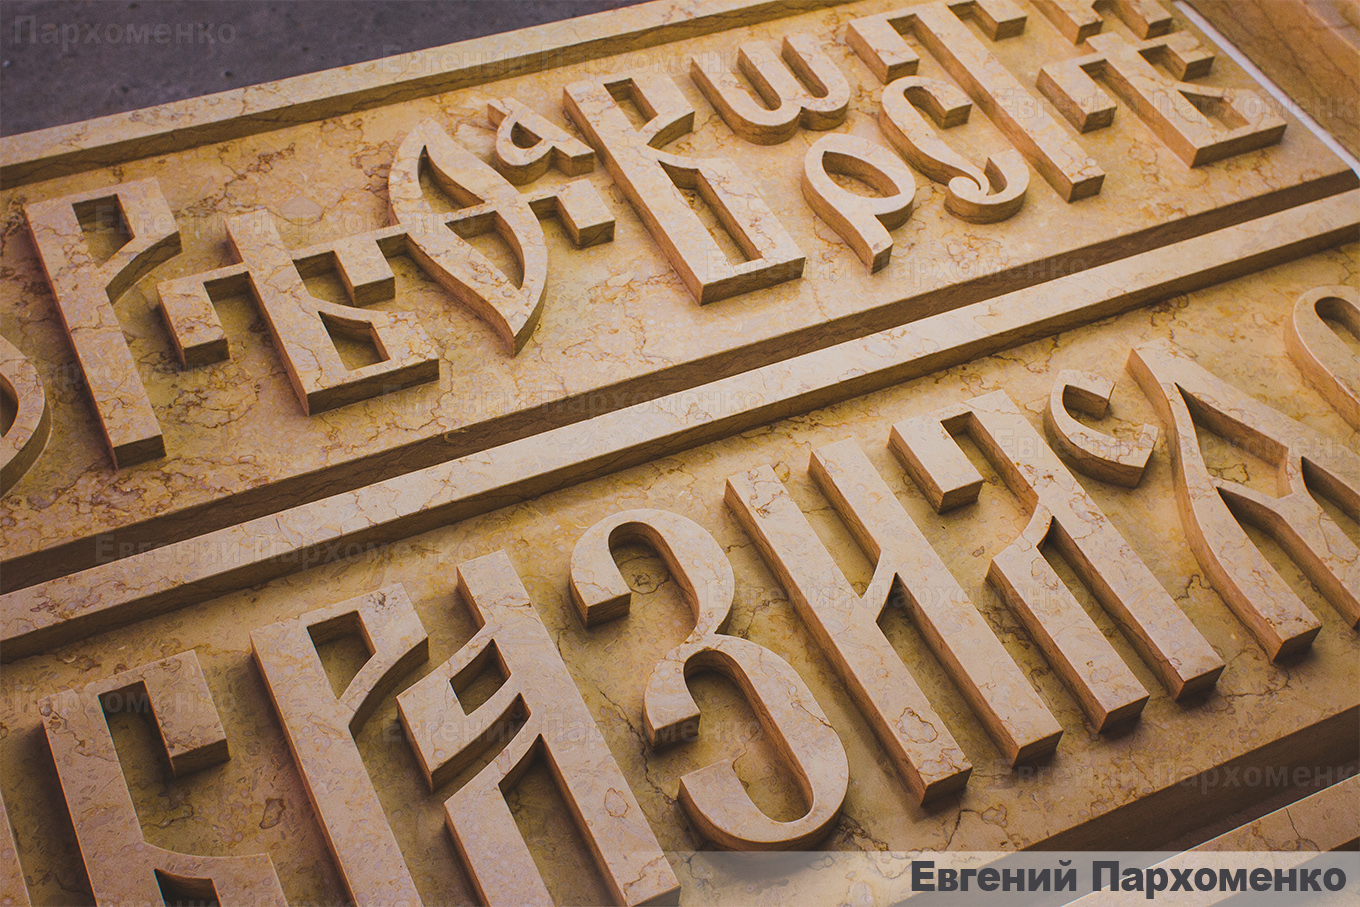 Вырезание букв из мрамора для храма на старославянском языке